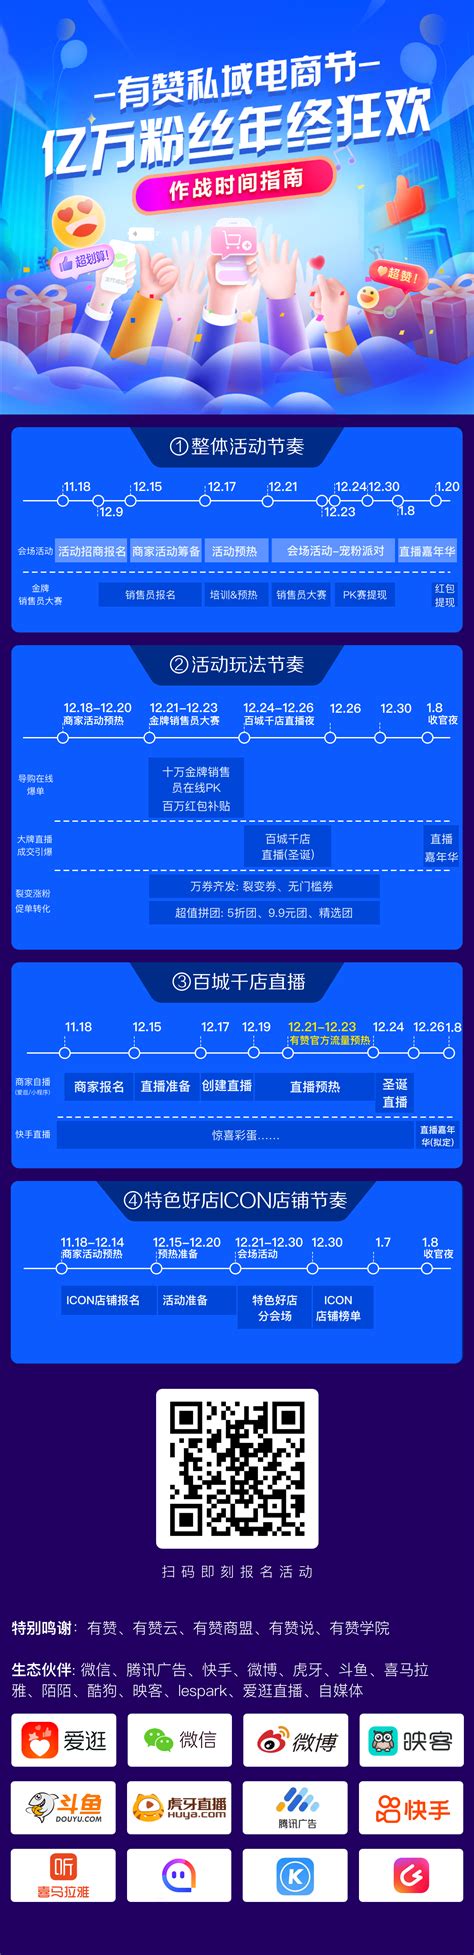 通渭县完成电商交易额2.32亿元—甘肃经济日报—甘肃经济网